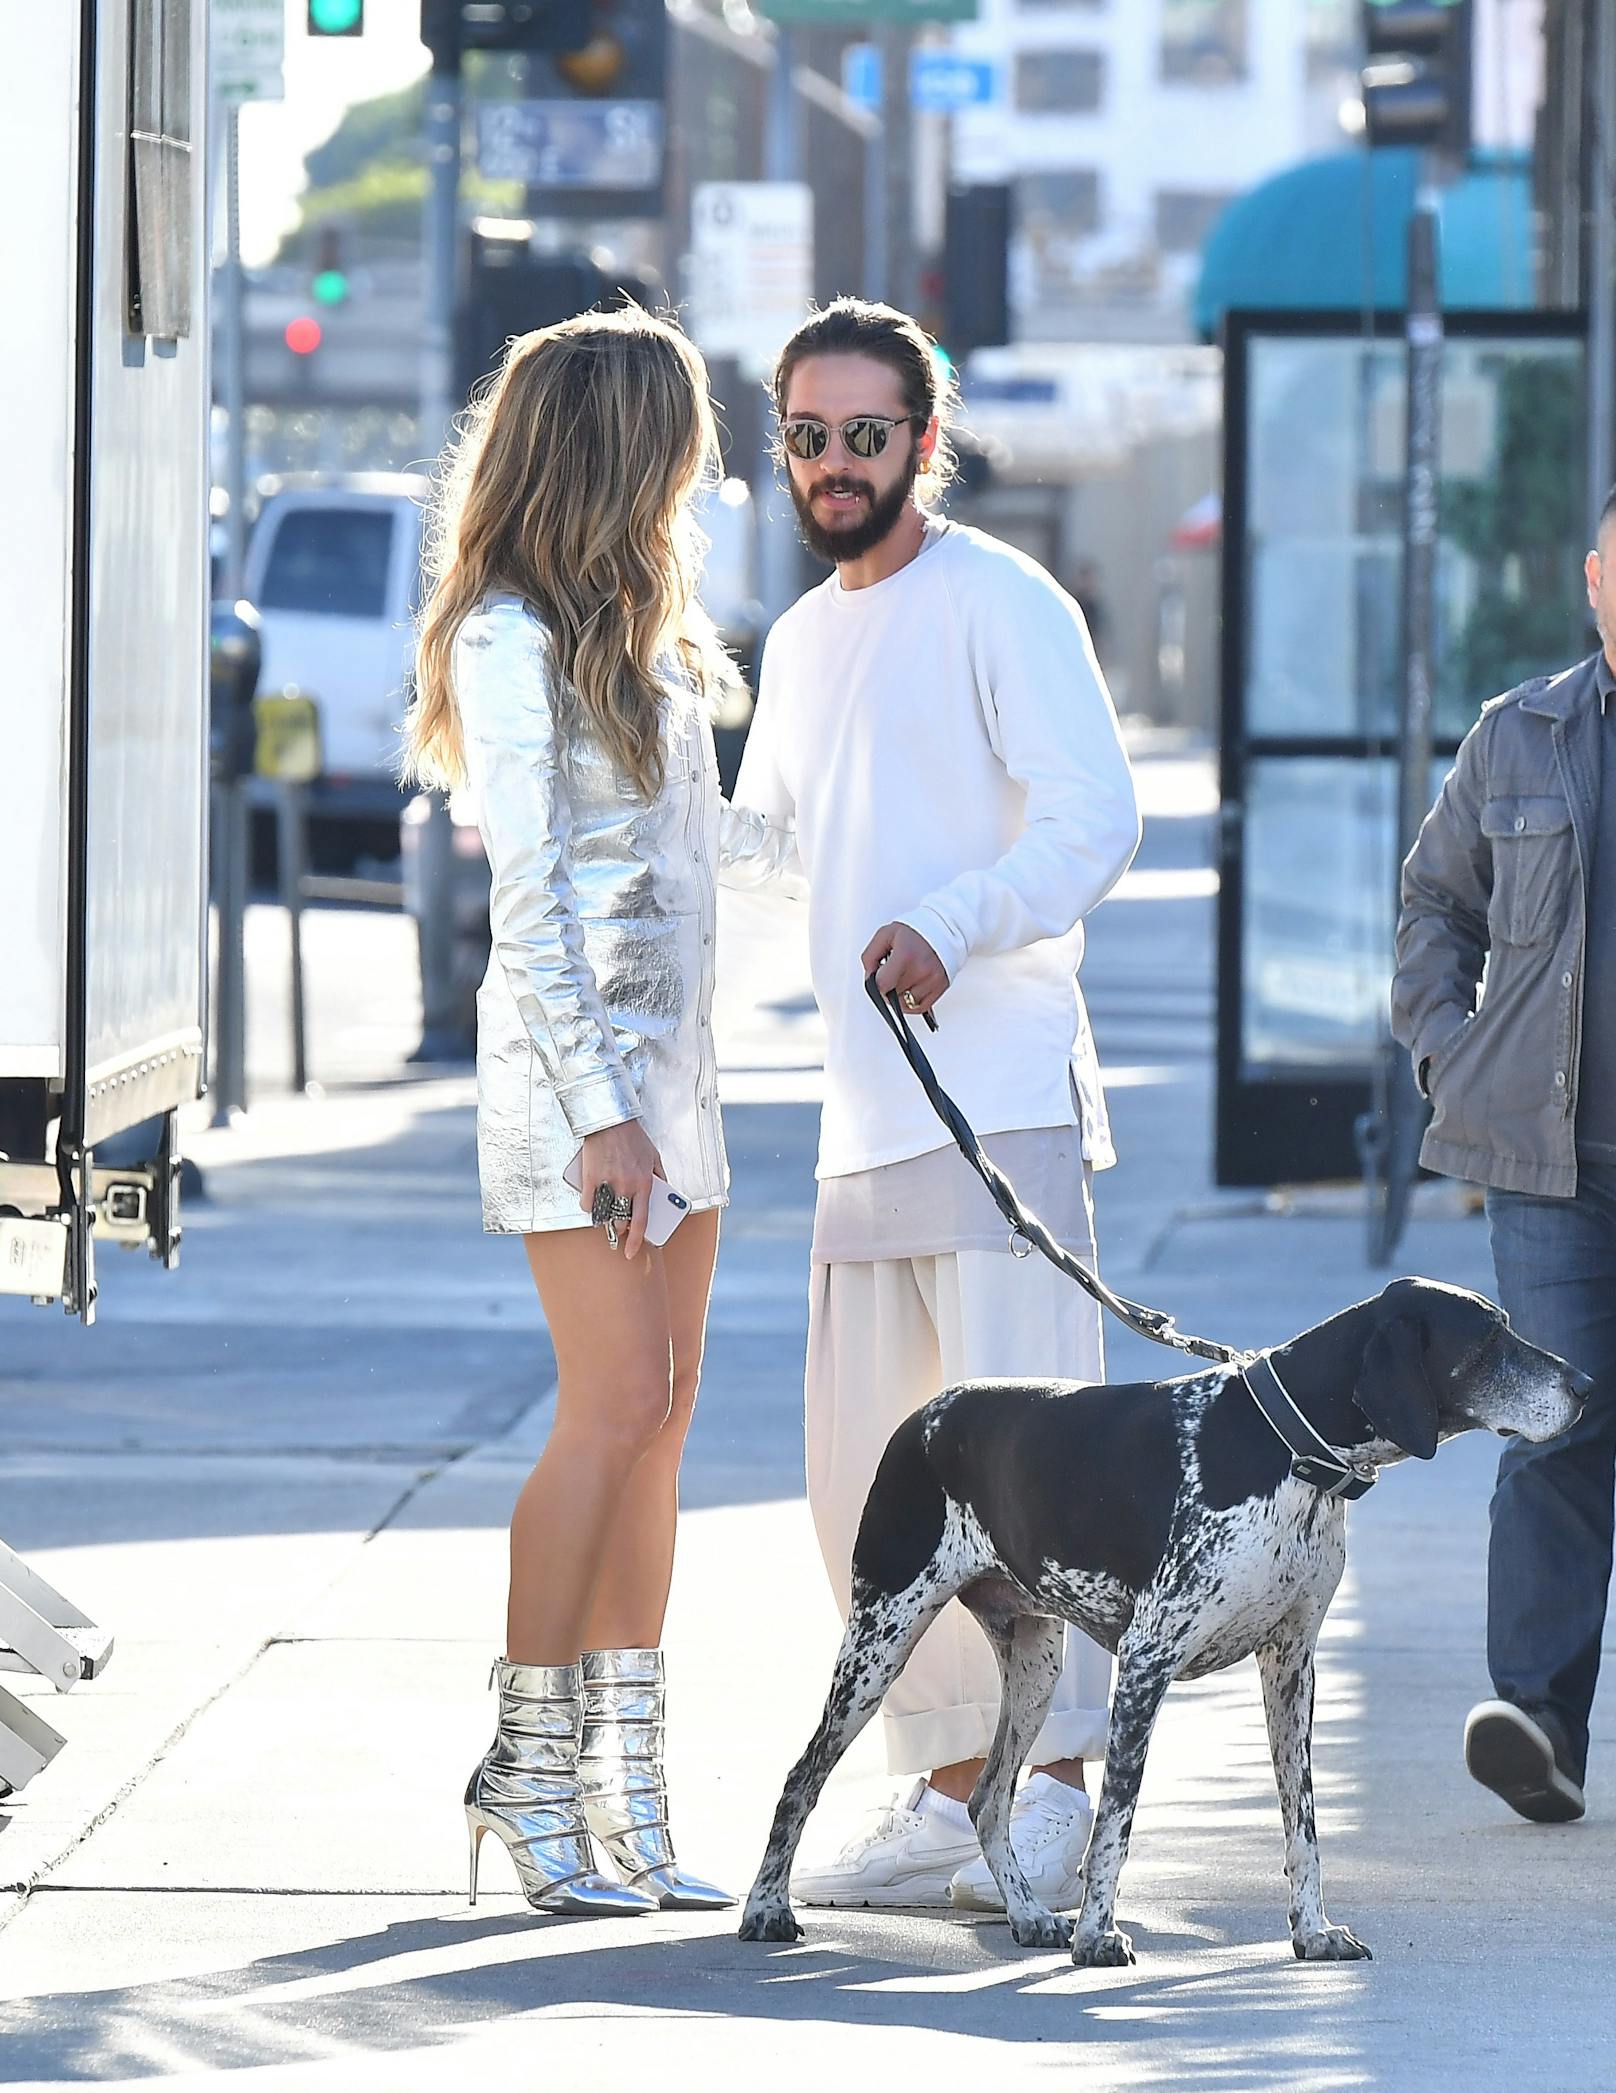 Heidi Klum und ihr Ehemann Tom Kaulitz besitzen mehrere Hunde. Hier im Bild: Toms Mischling Scotty.